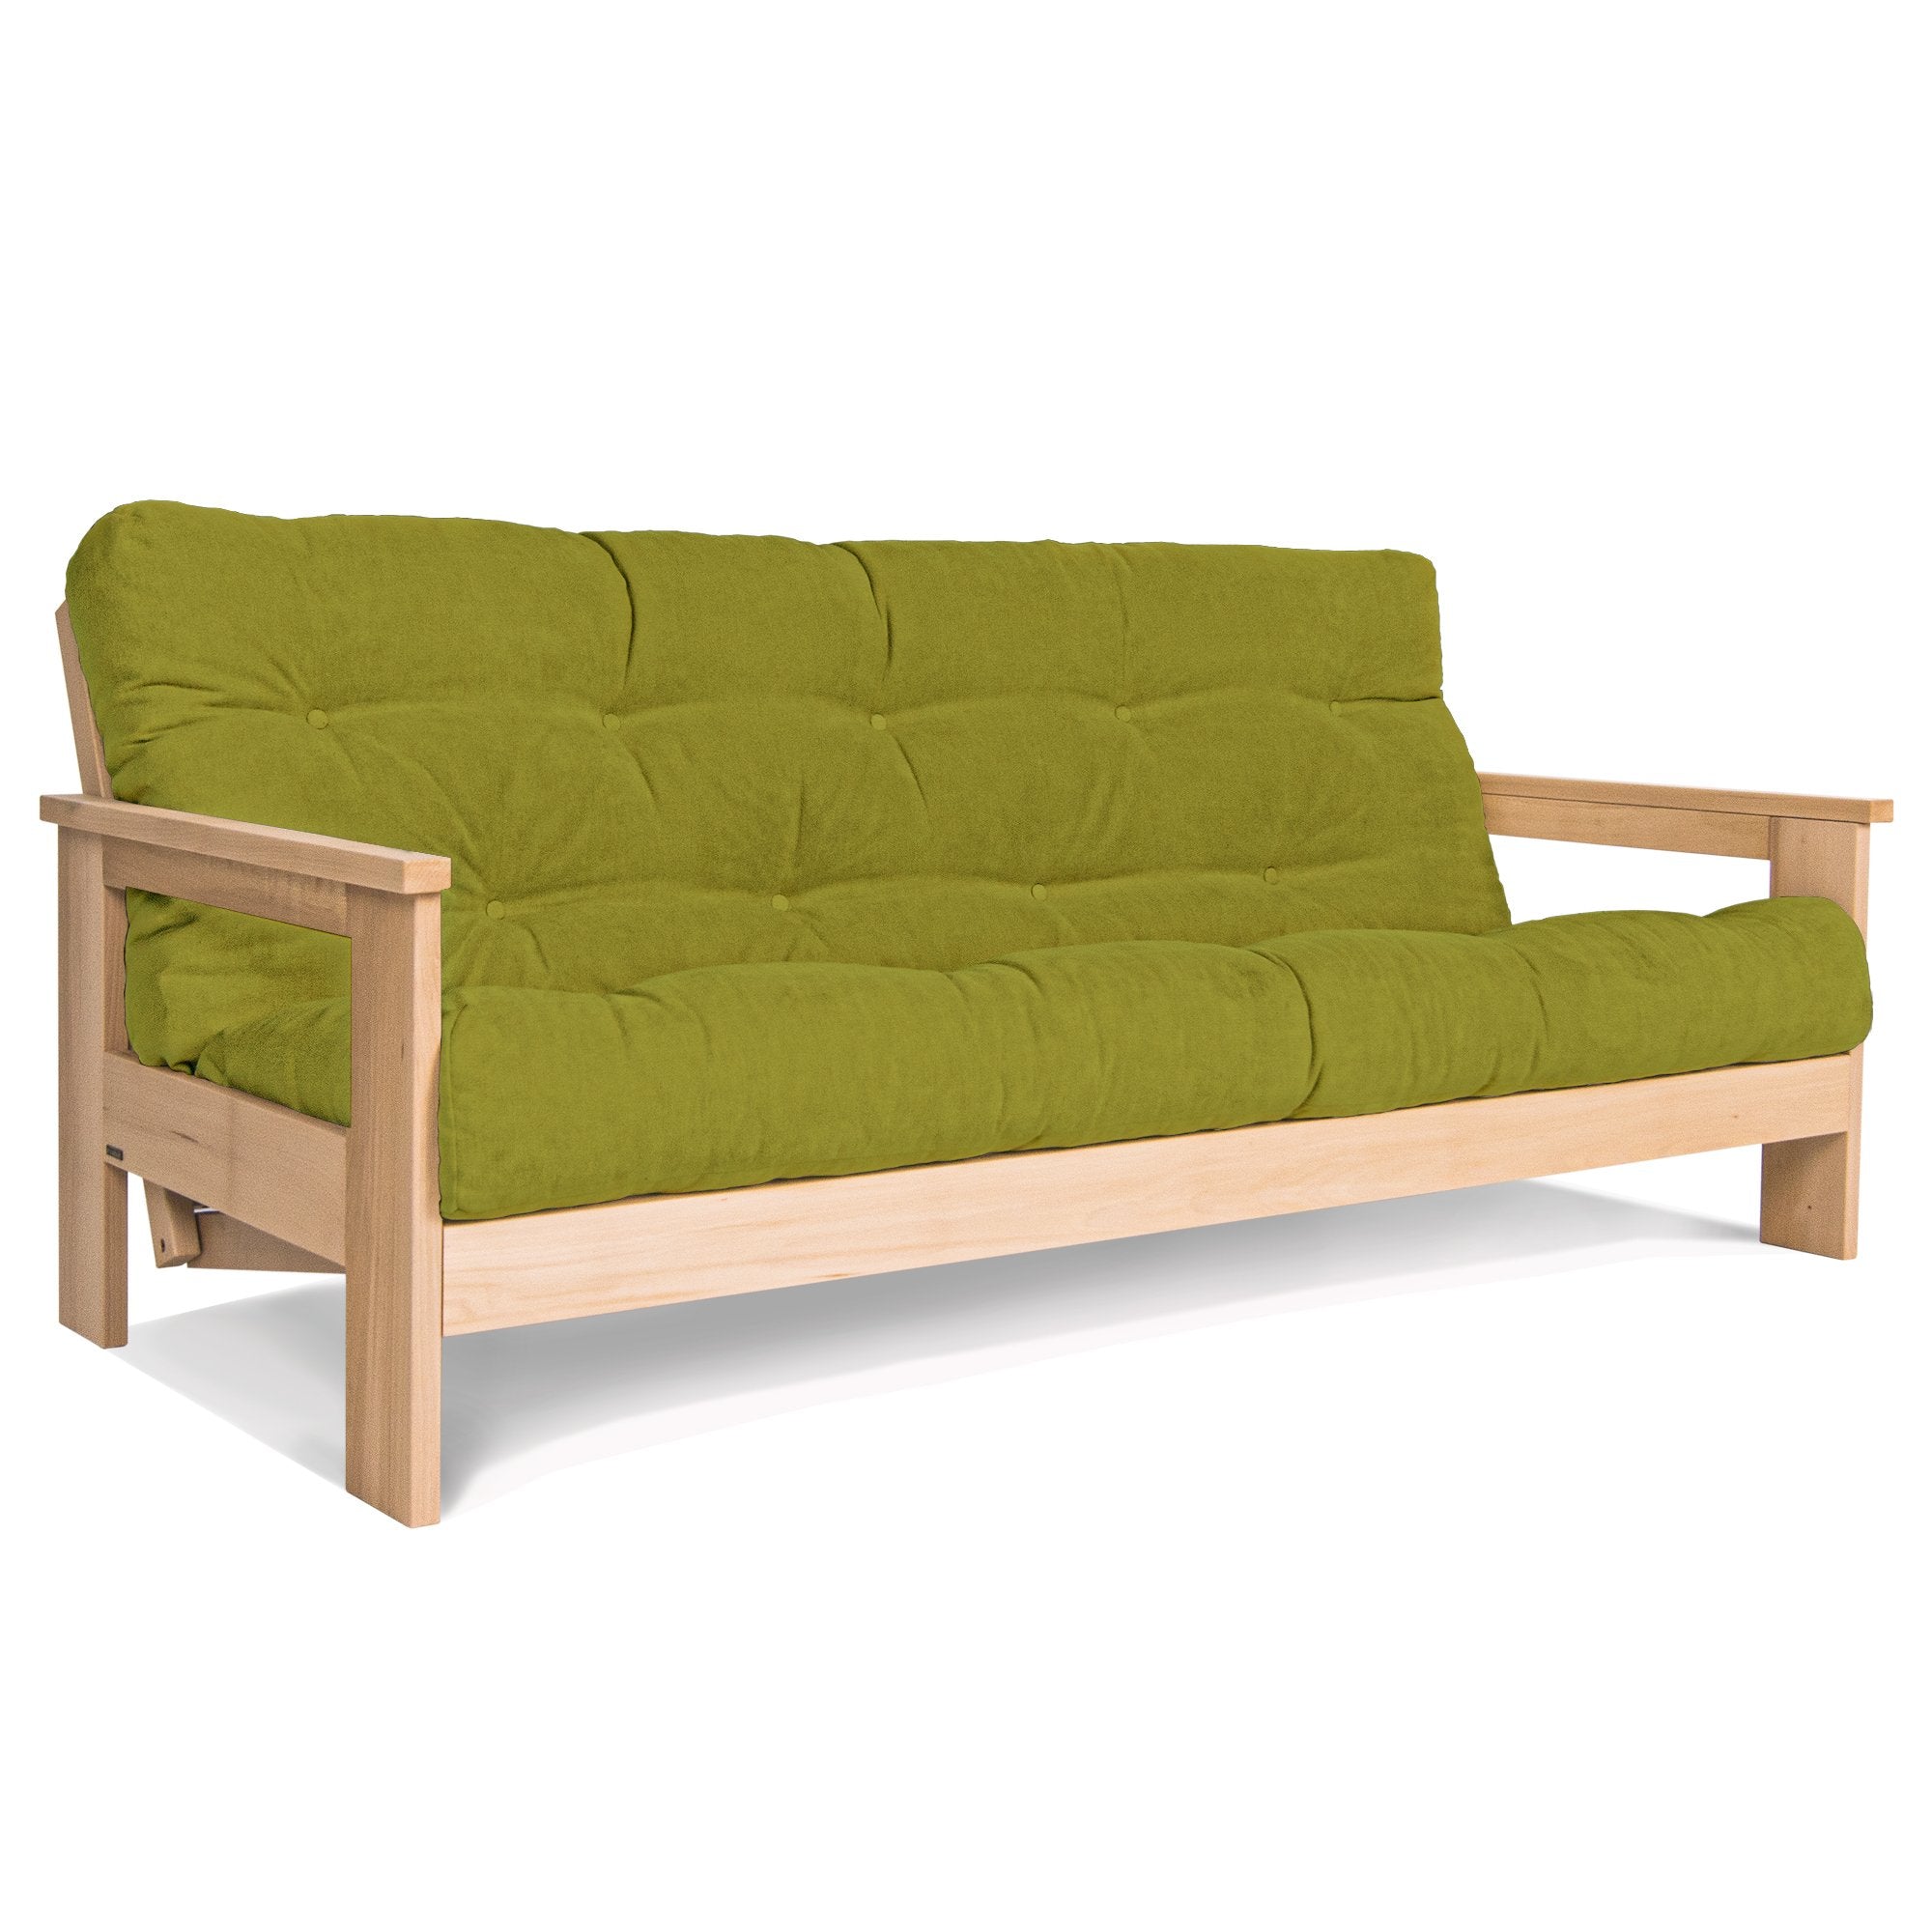 Раскладной диван-футон MEXICO, бук натурального цвета